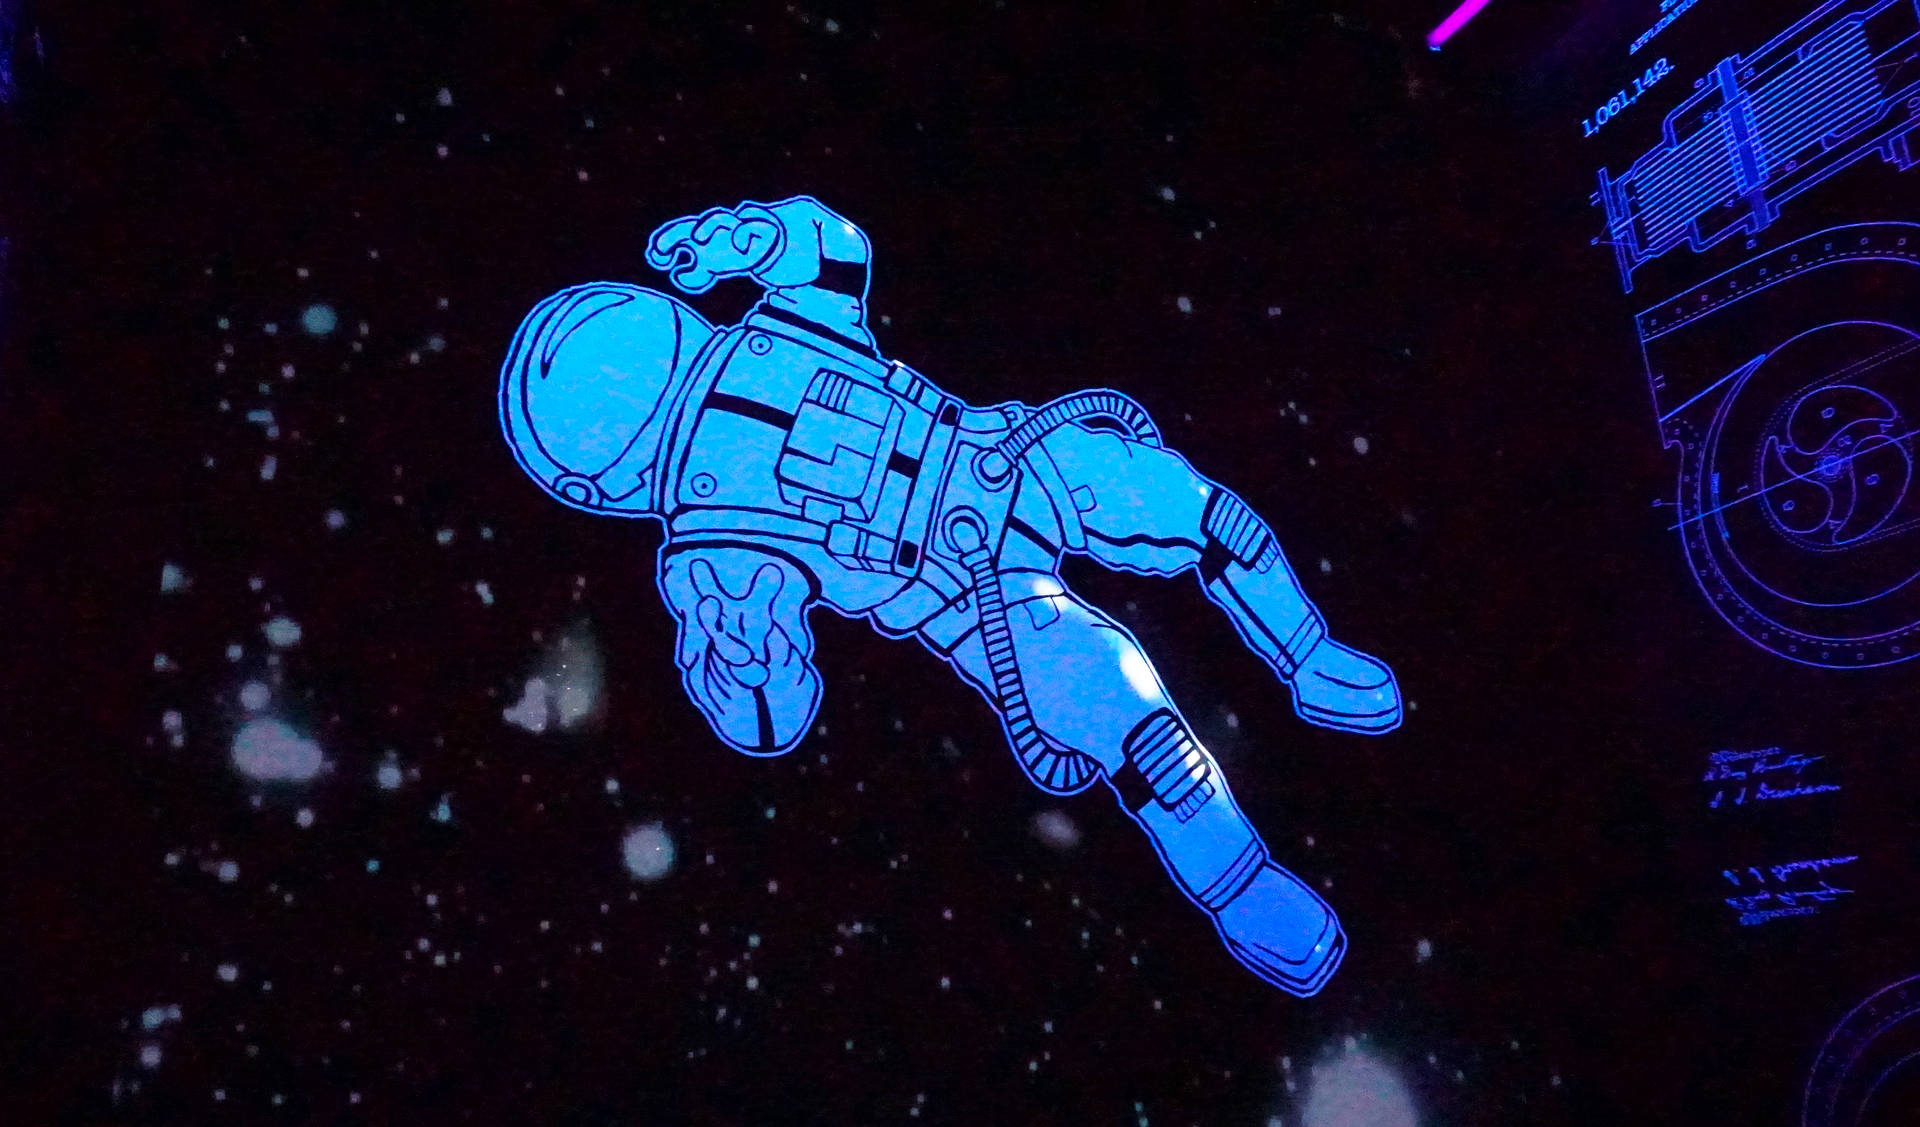 Cartoon Art Of Astronaut In Space Wallpaper